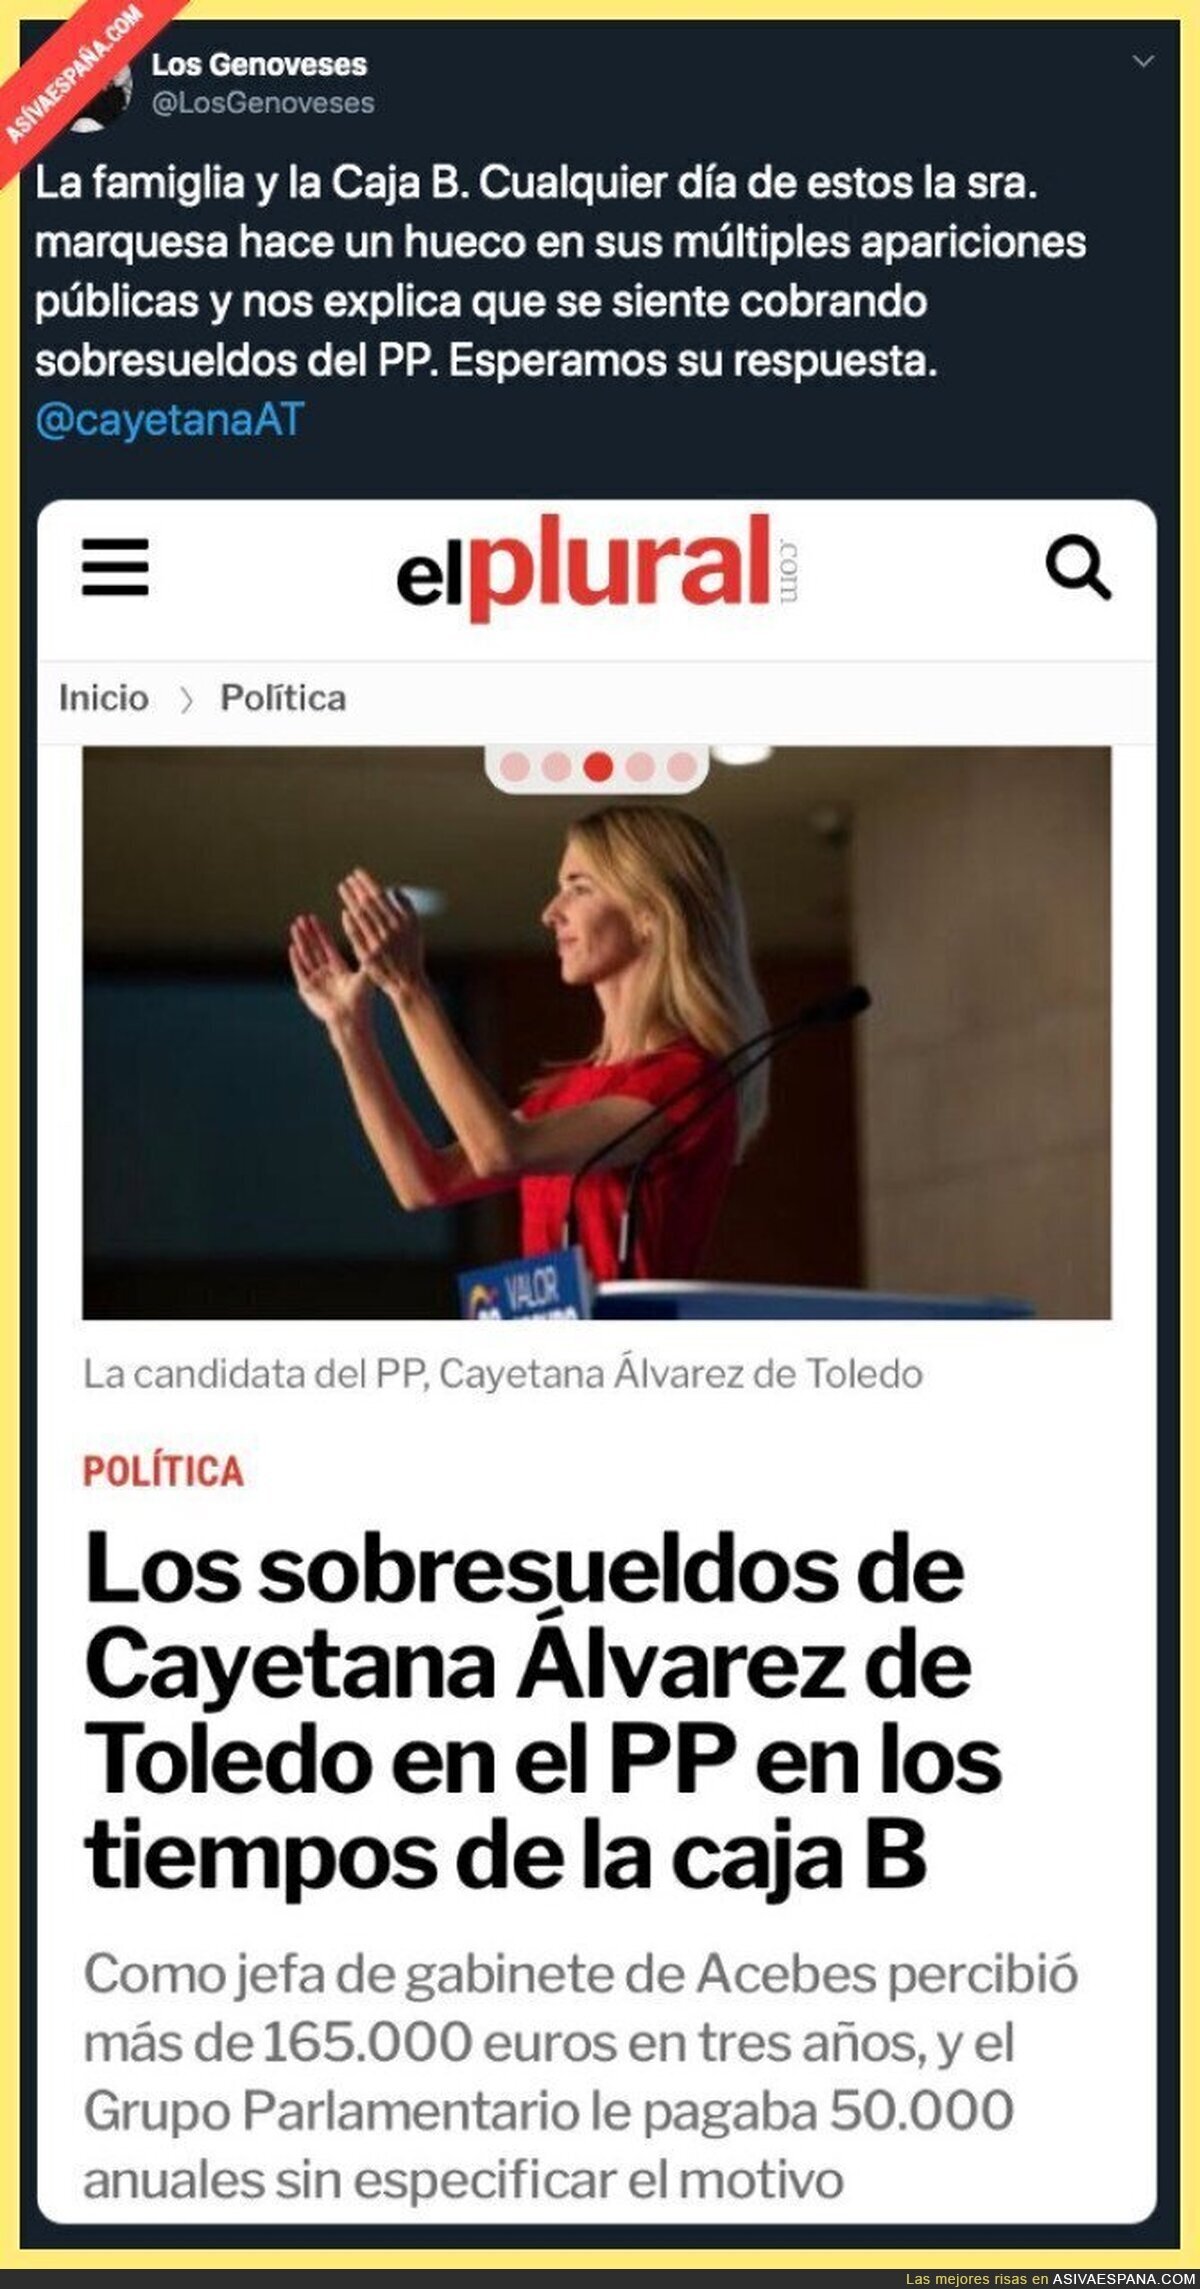 Los sobresueldos que habría recibido Cayetana Álvarez en el PP